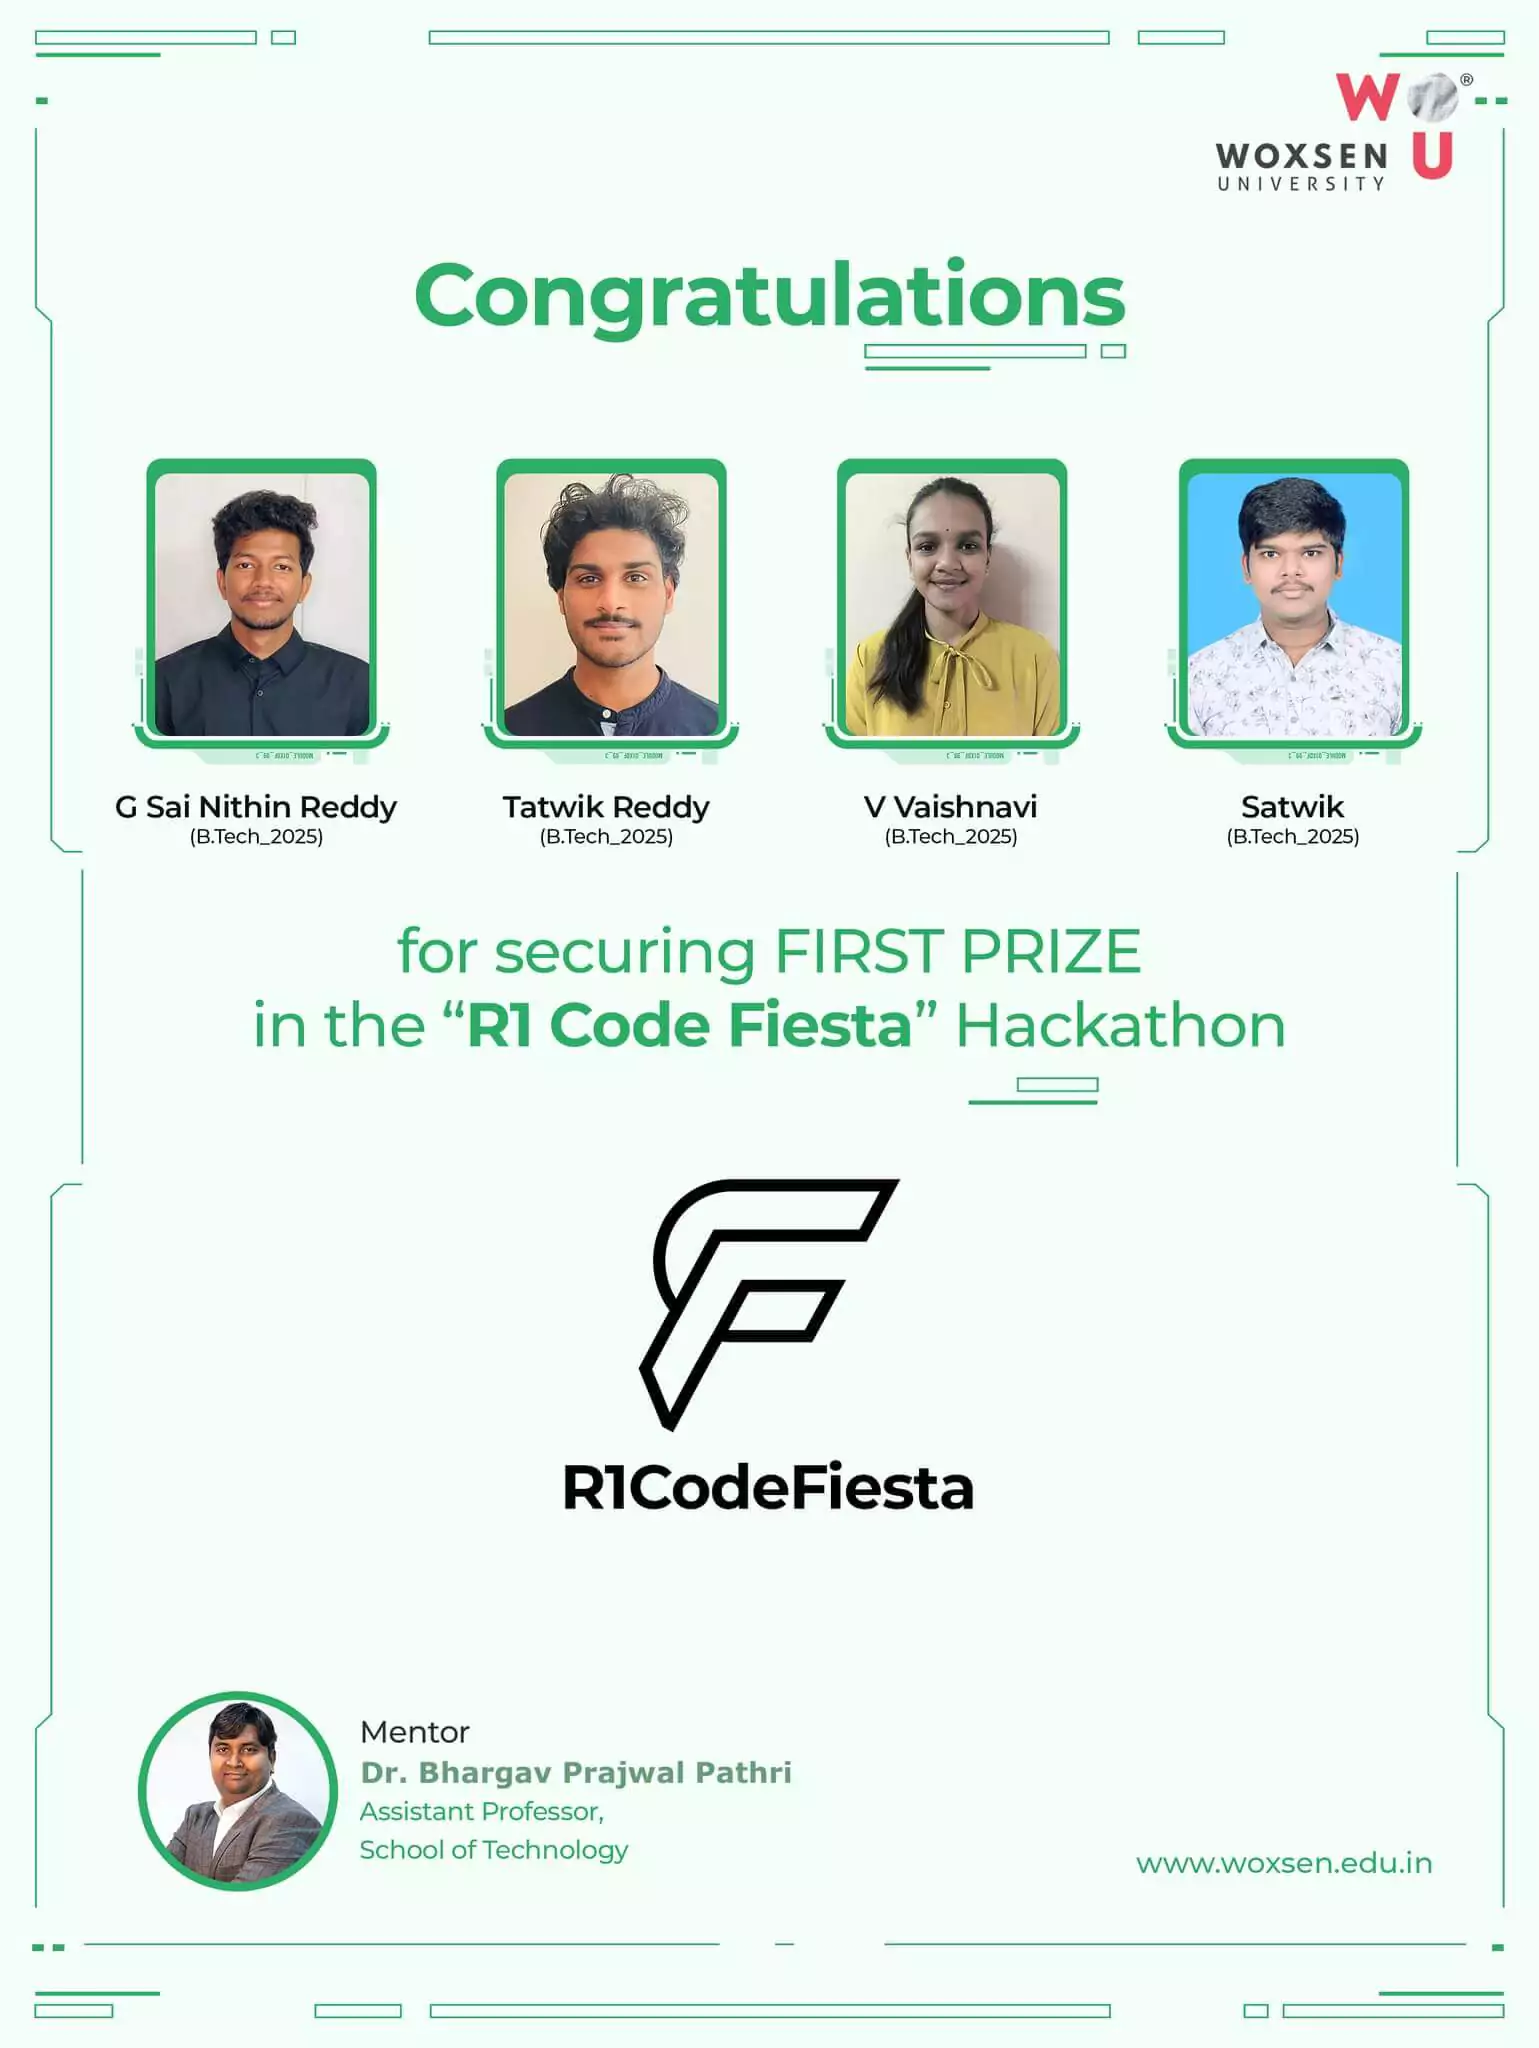 R1 CodeFiesta Hackathon